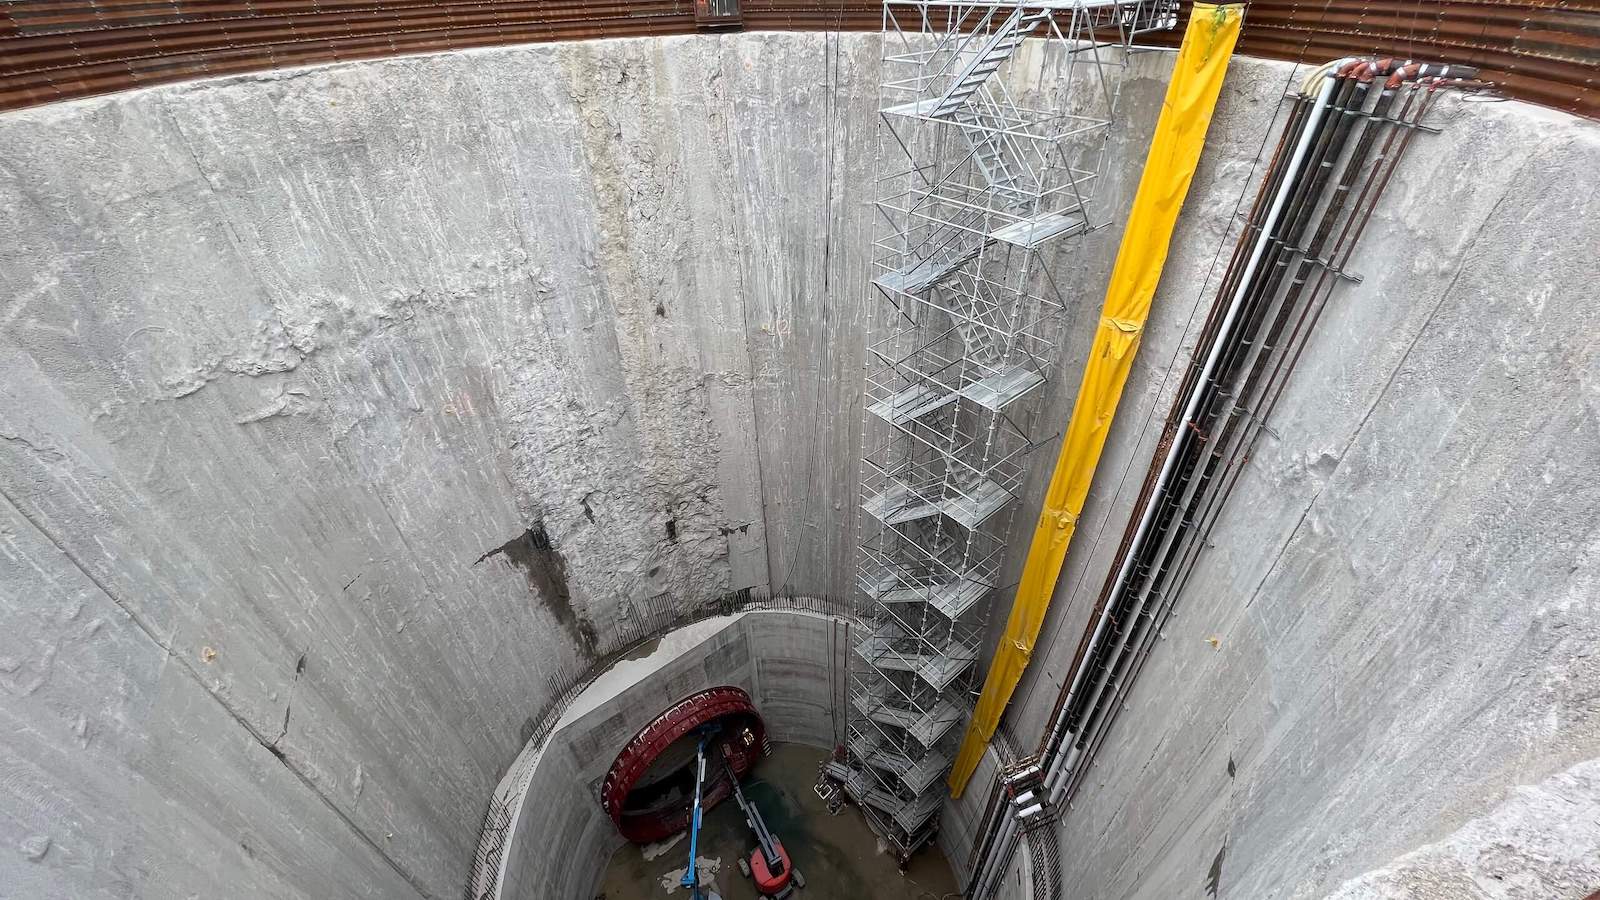 Concrete silo with scaffolding